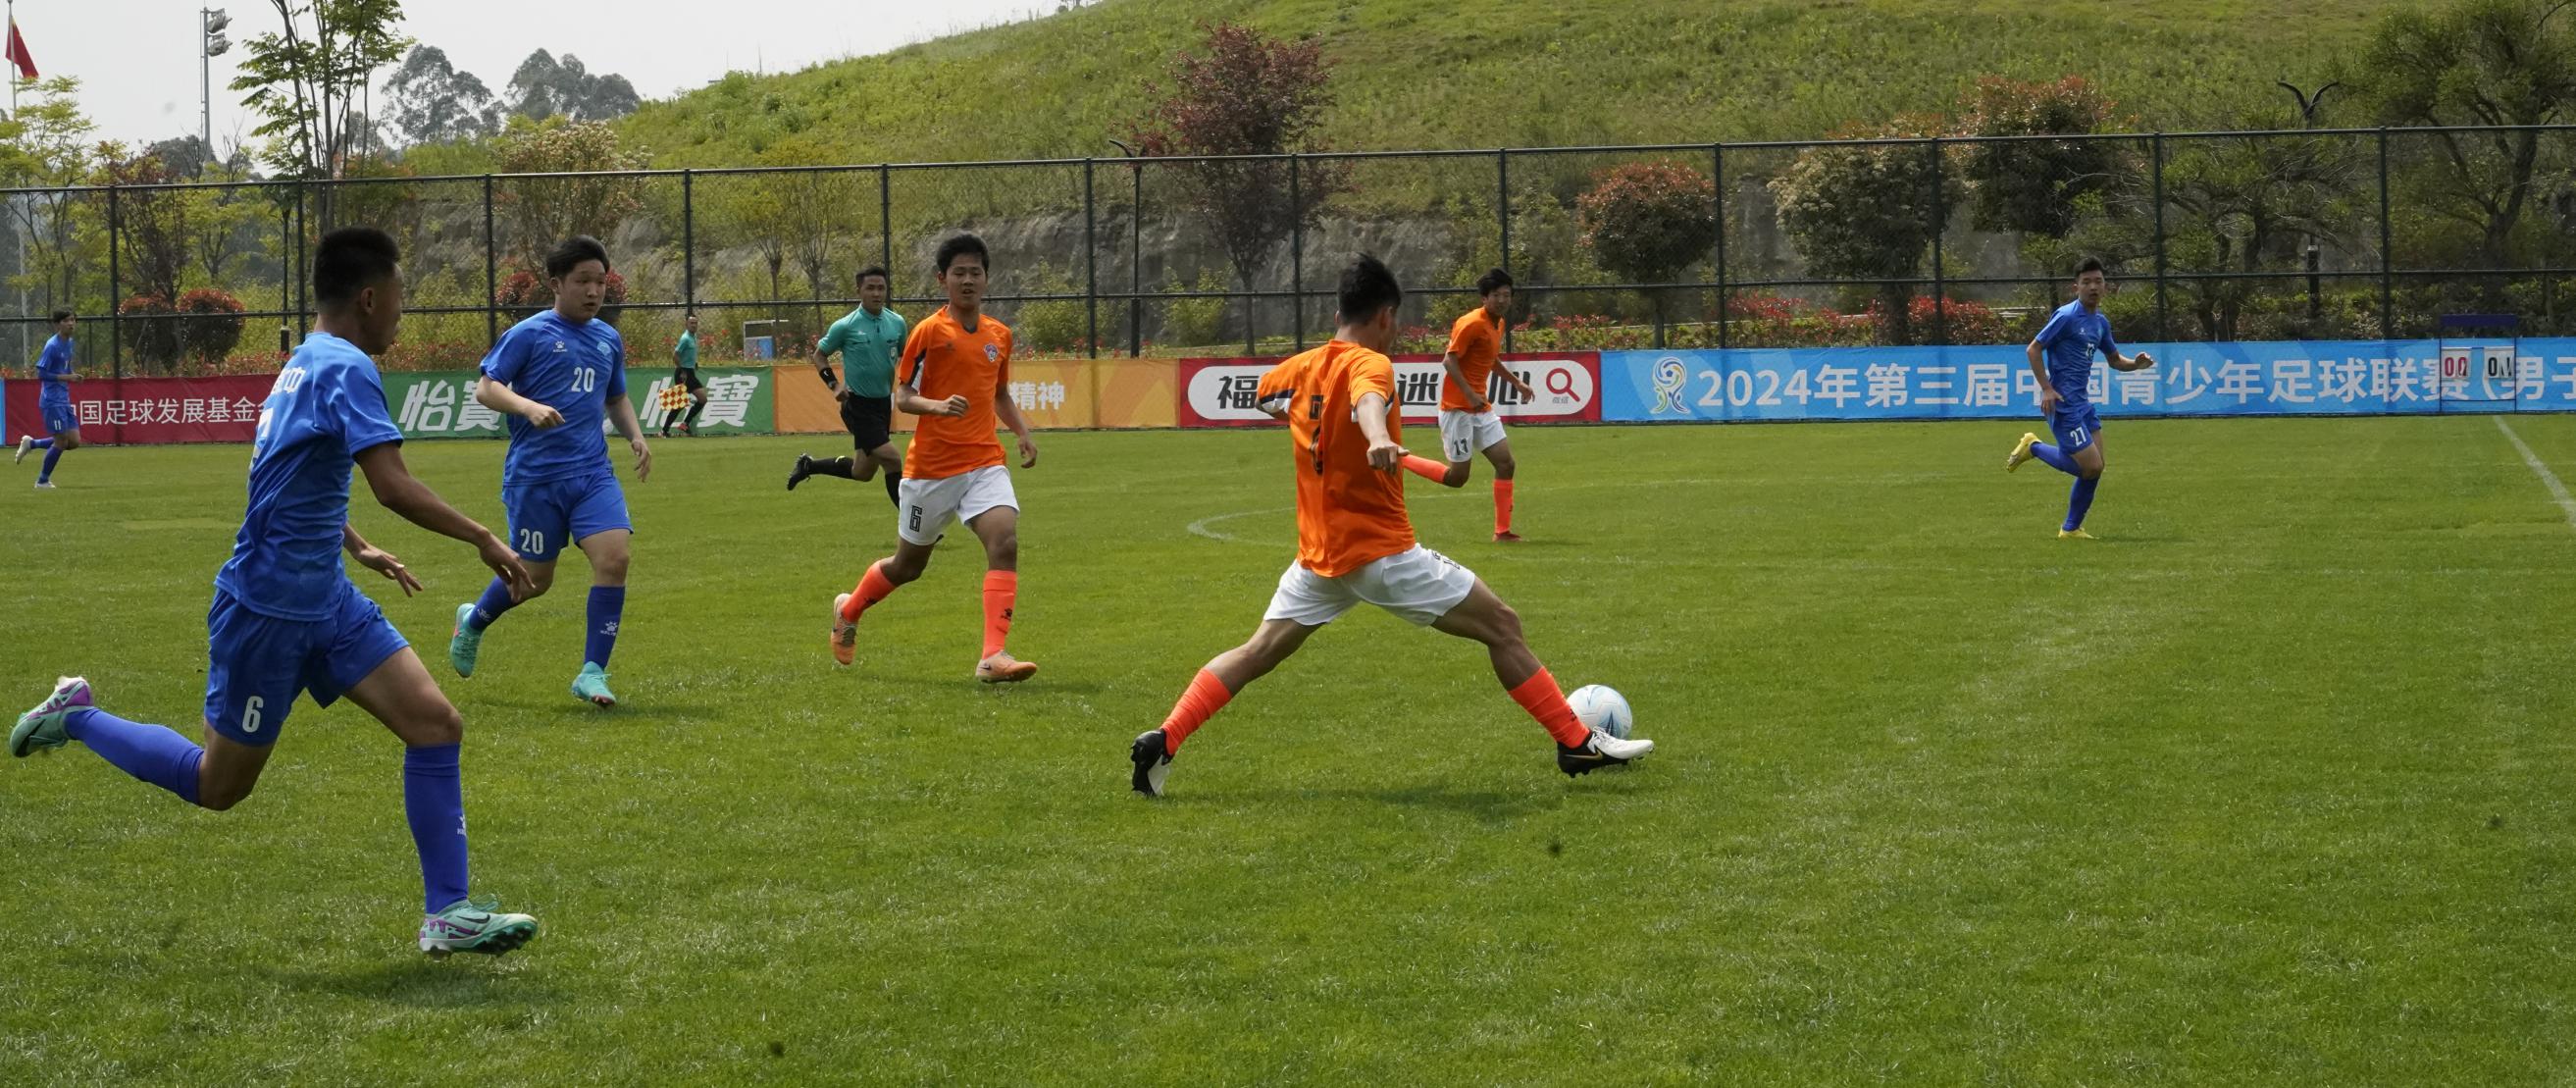 第三届中国青少年足球联赛中区预选赛在连界火热开赛